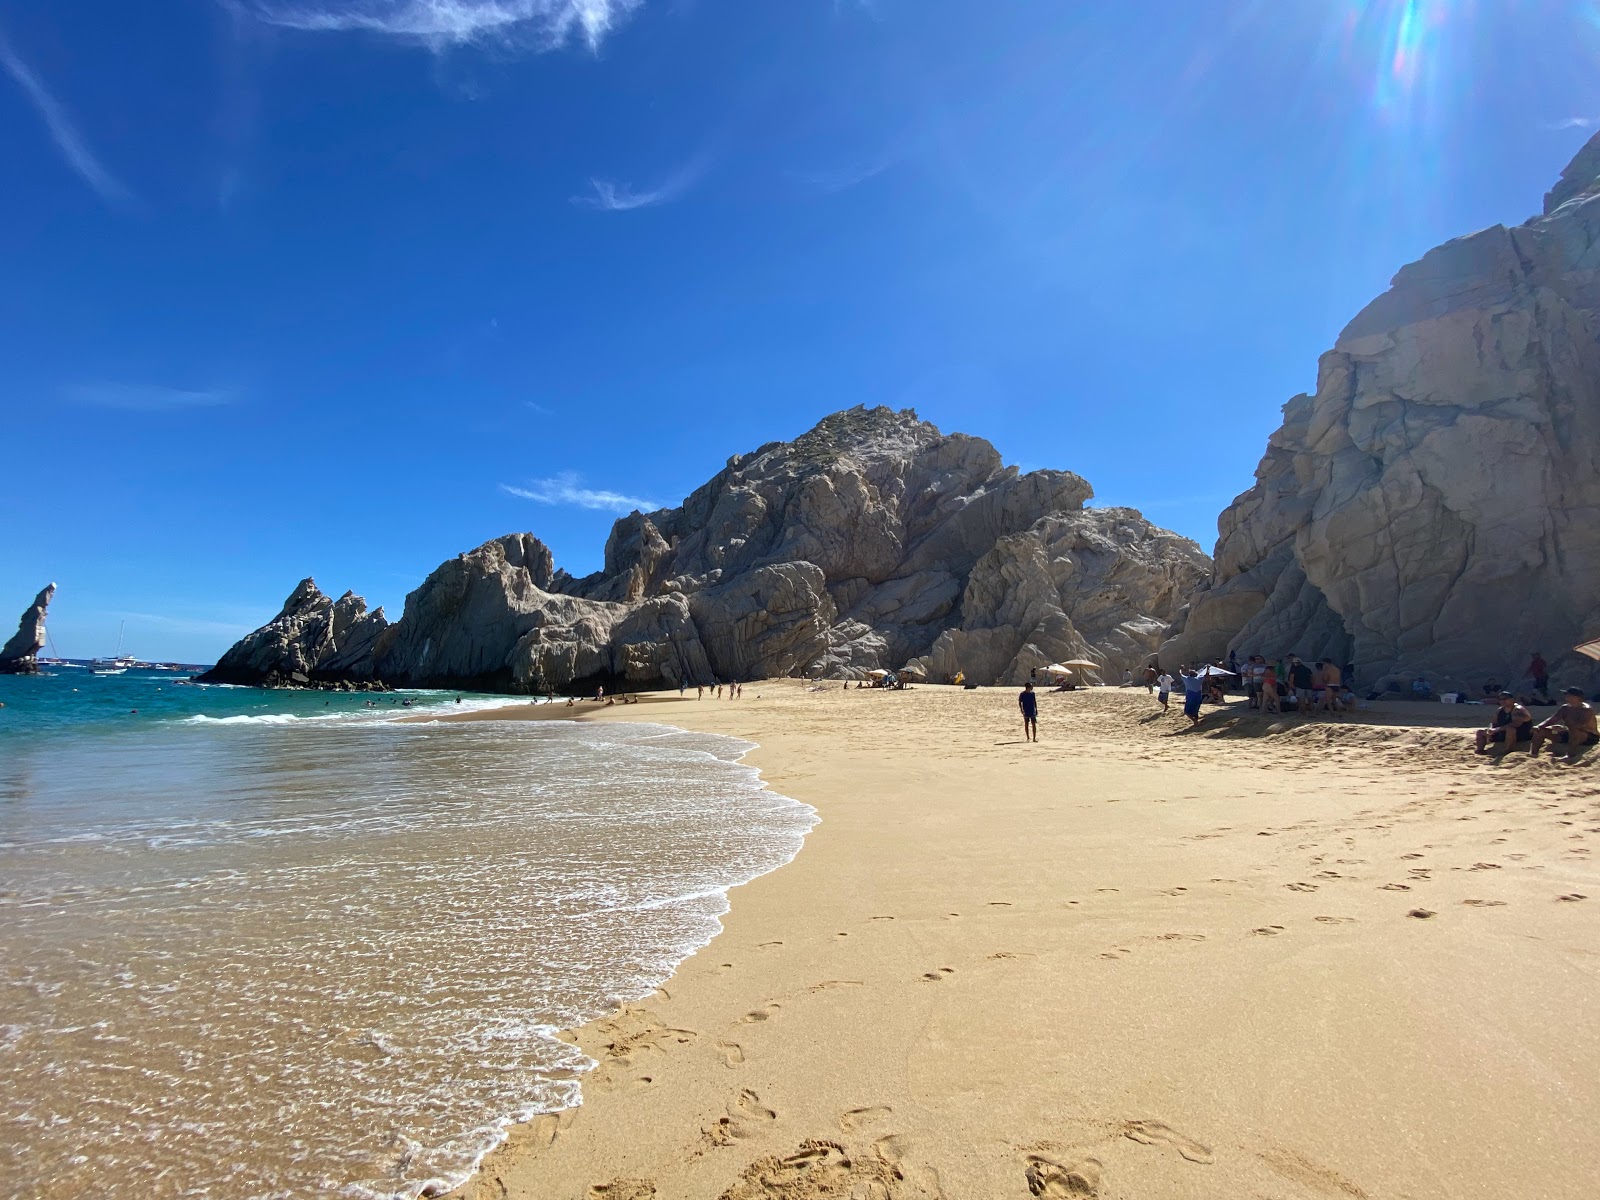 Playa de los Amantes'in fotoğrafı parlak ince kum yüzey ile